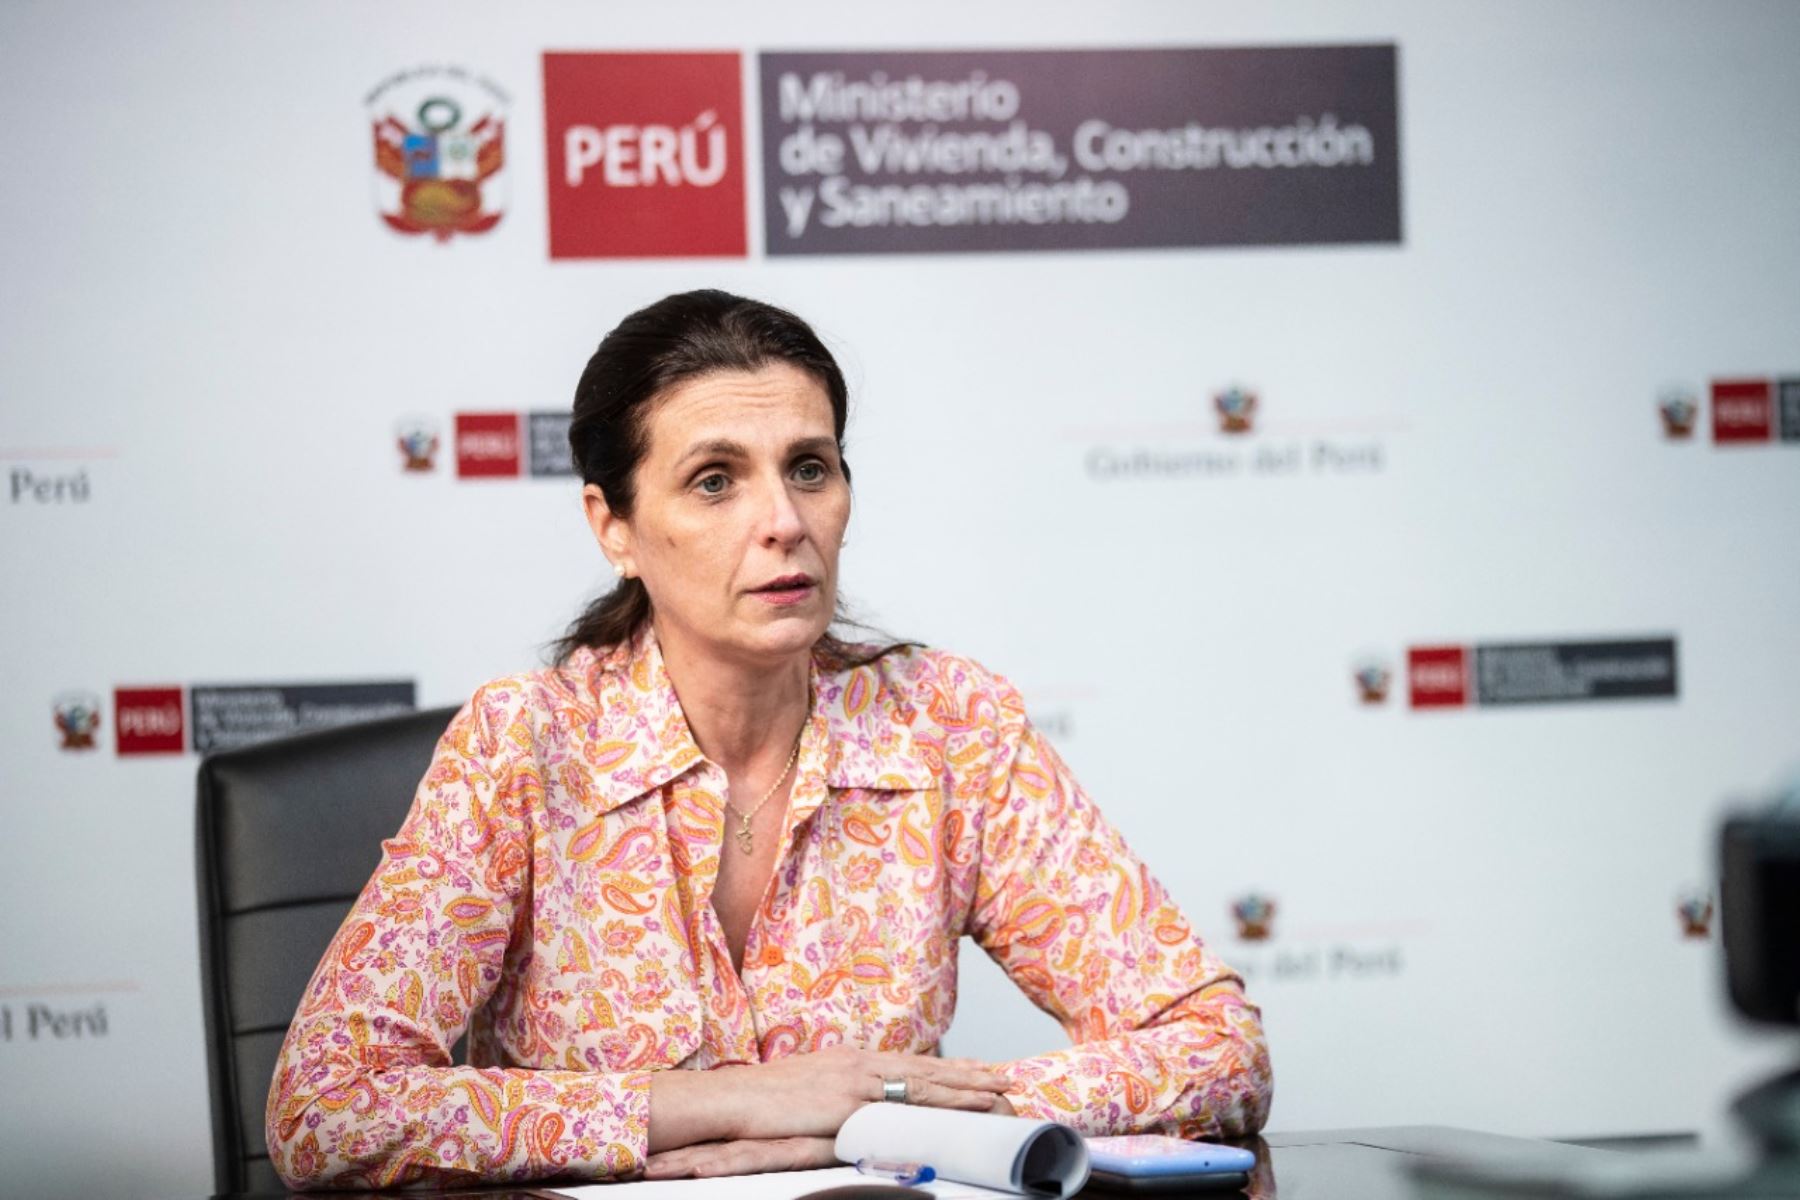 Ministra de Vivienda, Construcción y Saneamiento, Hania Pérez de Cuéllar. Foto: MVCS/Difusión.